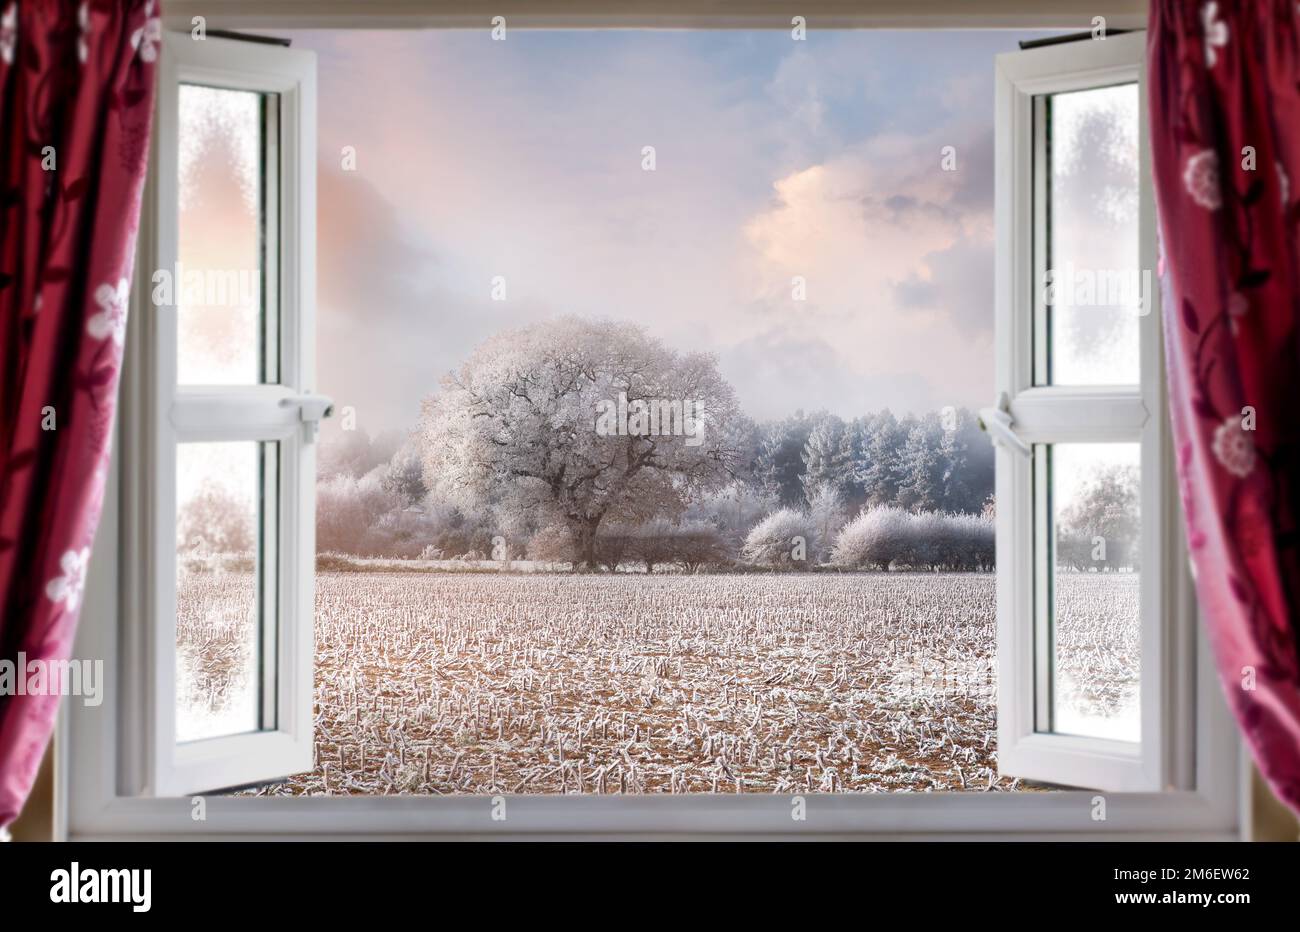 Vue à travers la fenêtre ouverte pour une vue magnifique sur le paysage rural d'hiver. Rideaux rouges et fenêtres modernes à double vitrage Banque D'Images